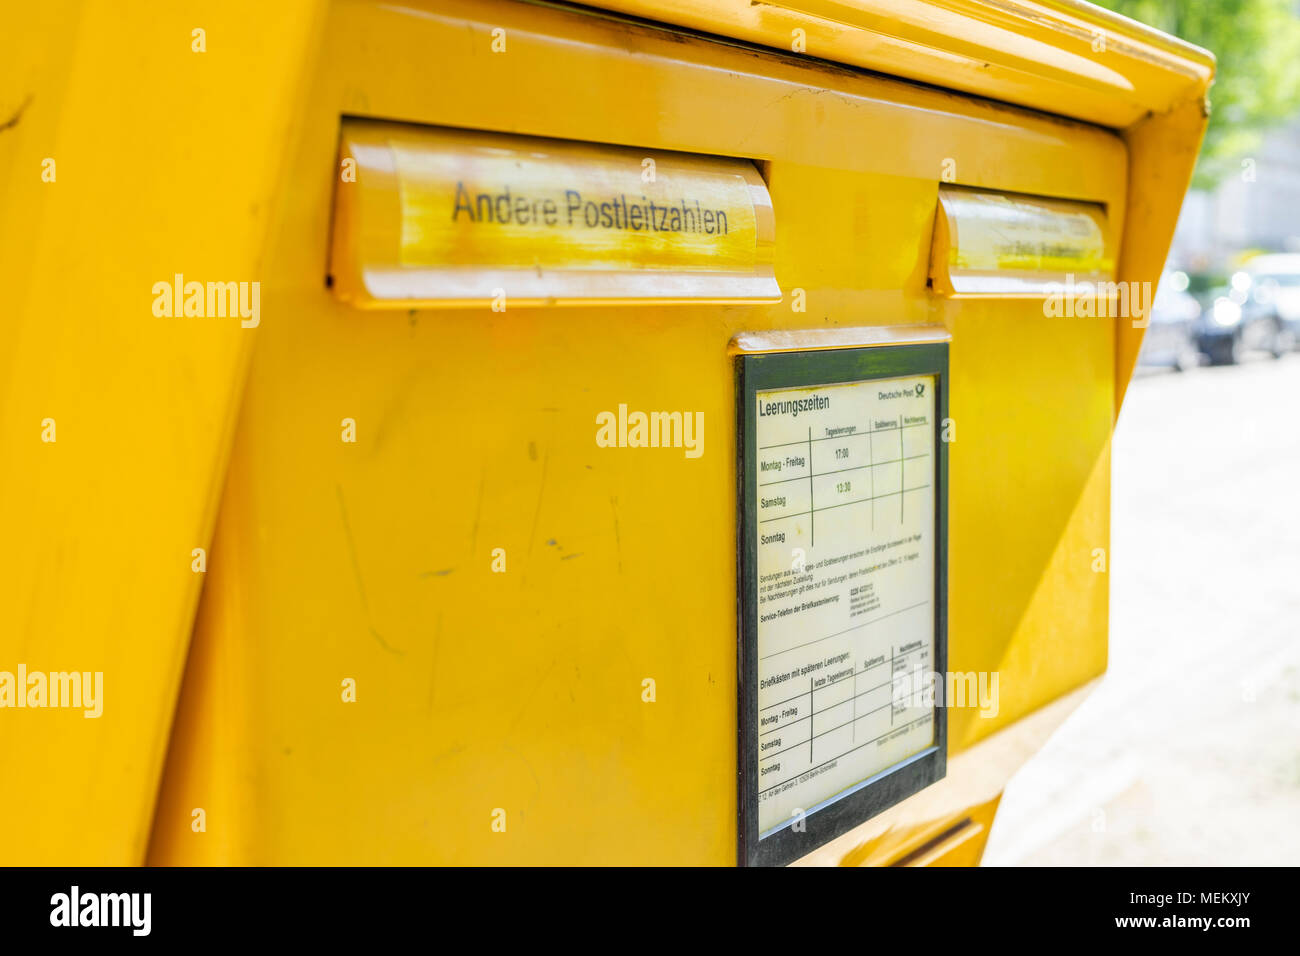 Yellow Deutsche Post letter box (Briefkasten) in Germany Stock Photo - Alamy